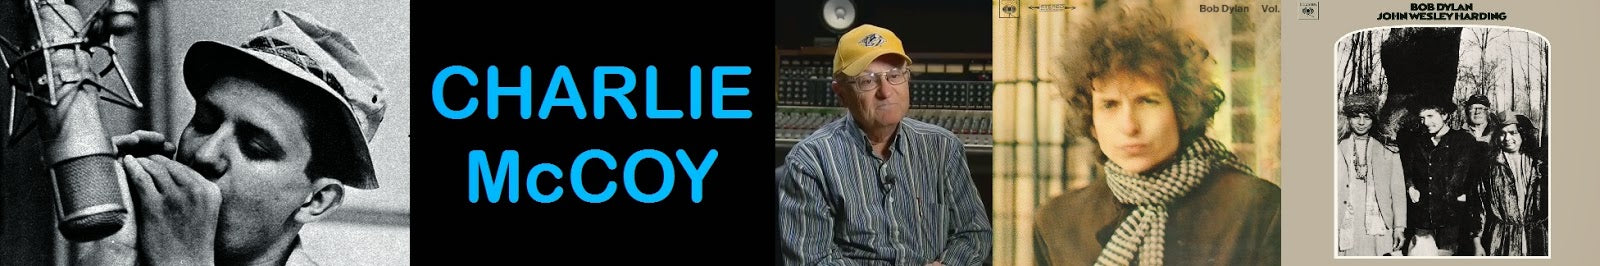 INTERVIEW: Charlie McCoy on Bob Dylan, Elvis and Johnny Cash - TVStoreOnline